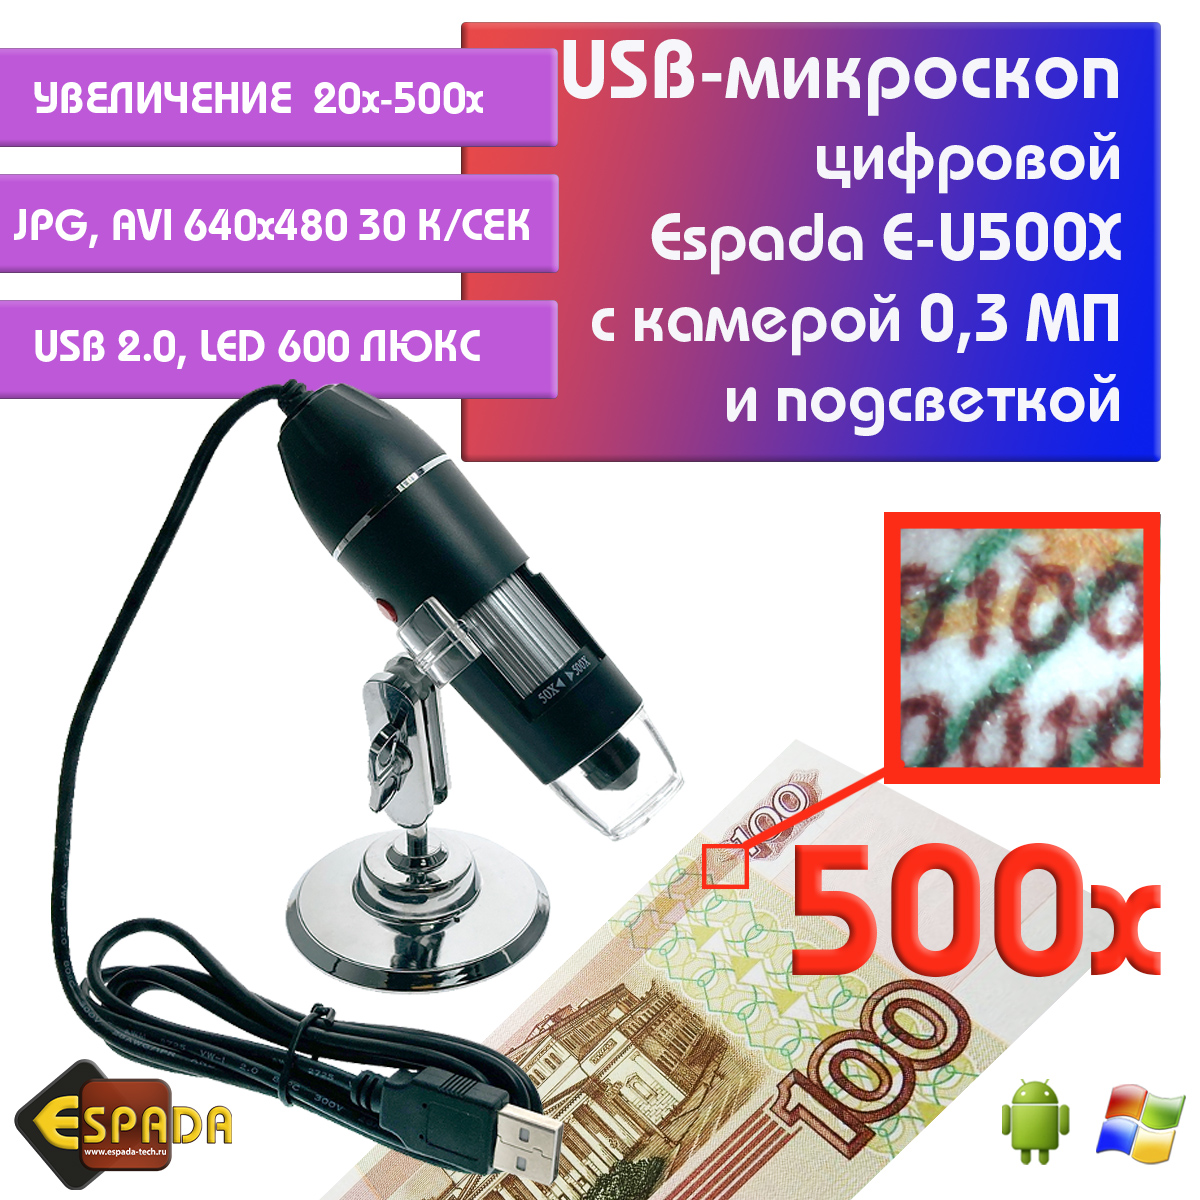 Портативный цифровой USB-микроскоп Espada E-U500X c камерой 0,3 МП и увеличением 500x видеокарта afox geforce gt 730